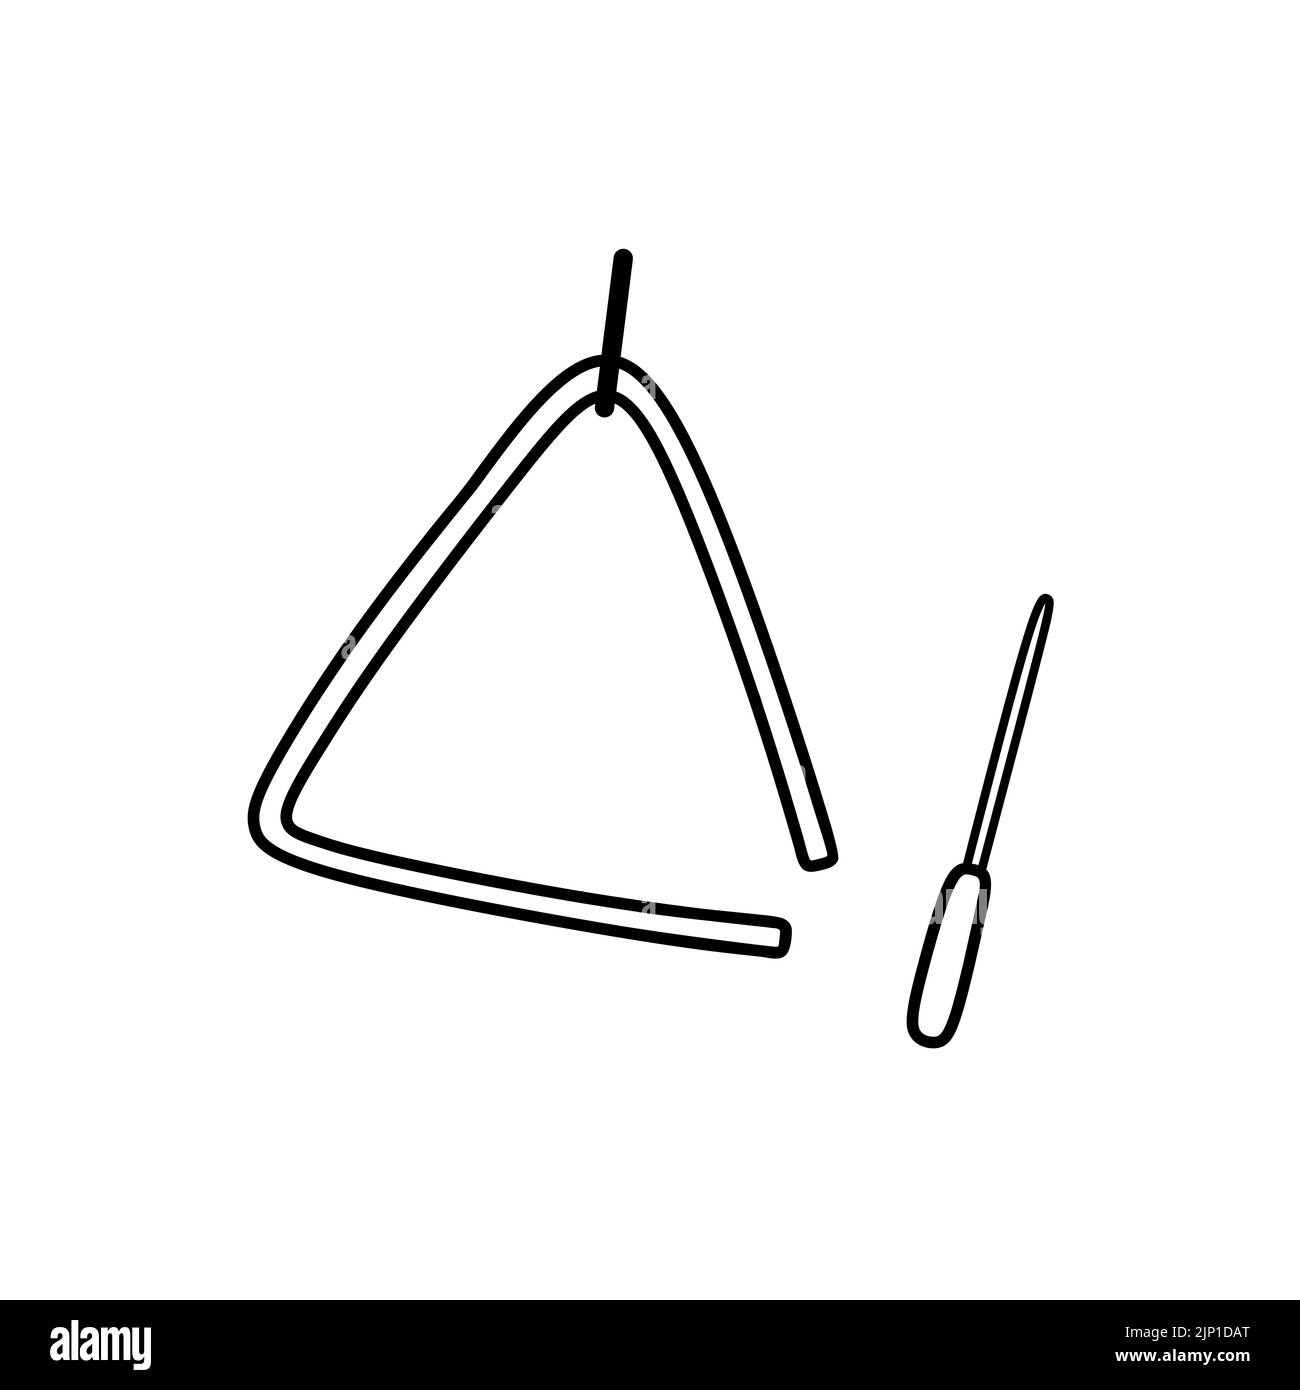 Triangle musical instrument Banque d'images noir et blanc - Alamy